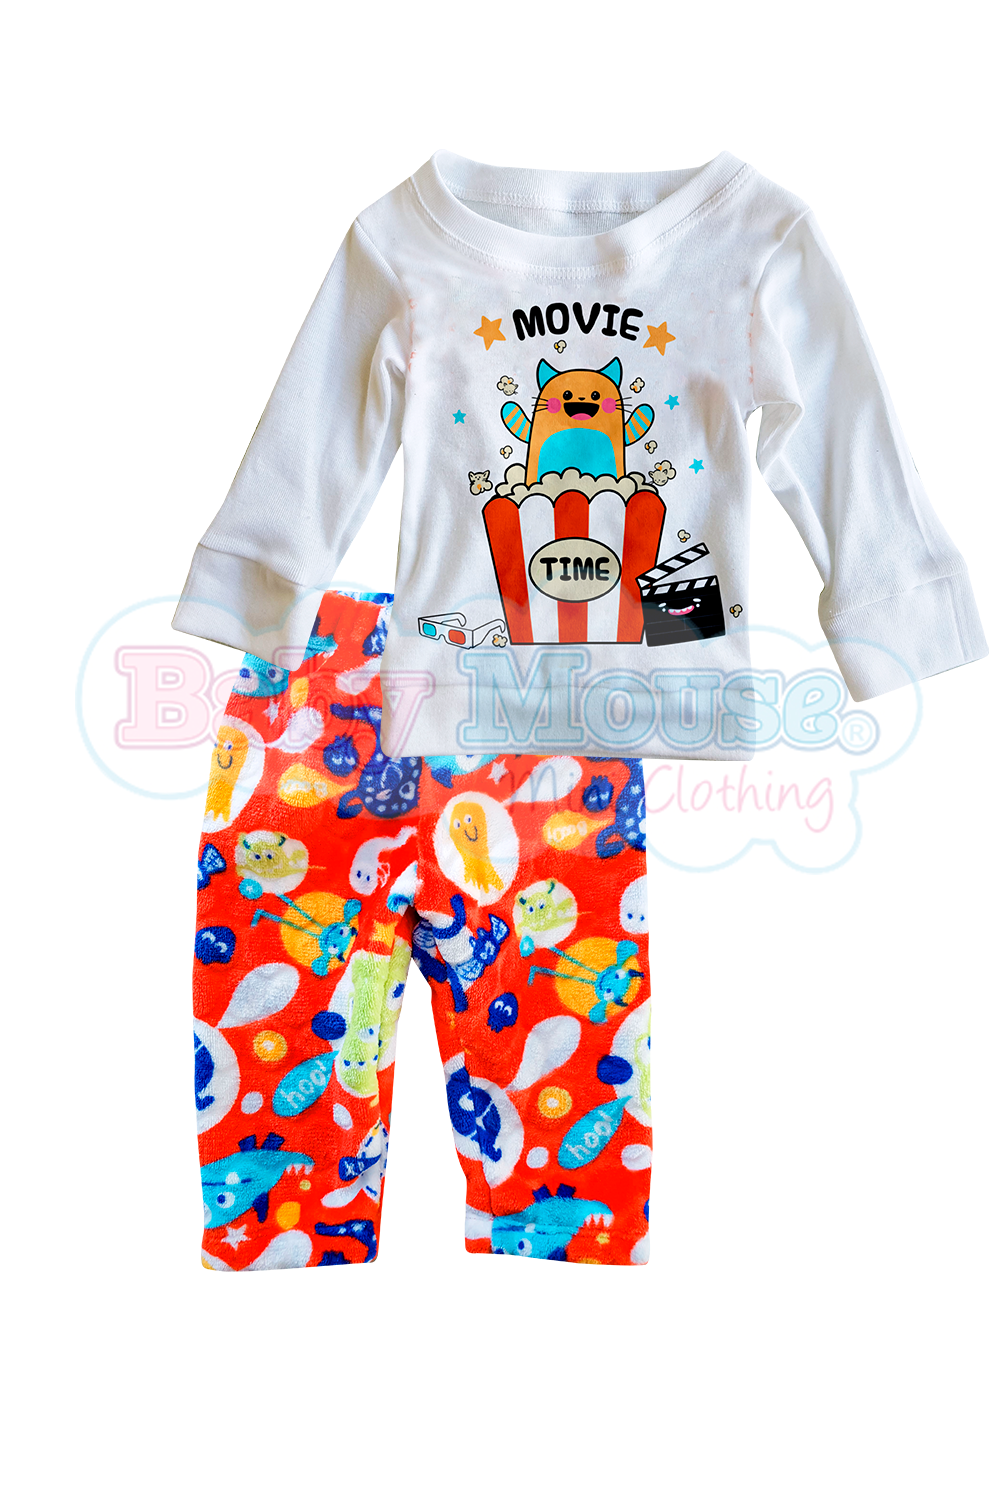 Pijama polar 6 a 24 meses. Movie time marcianos